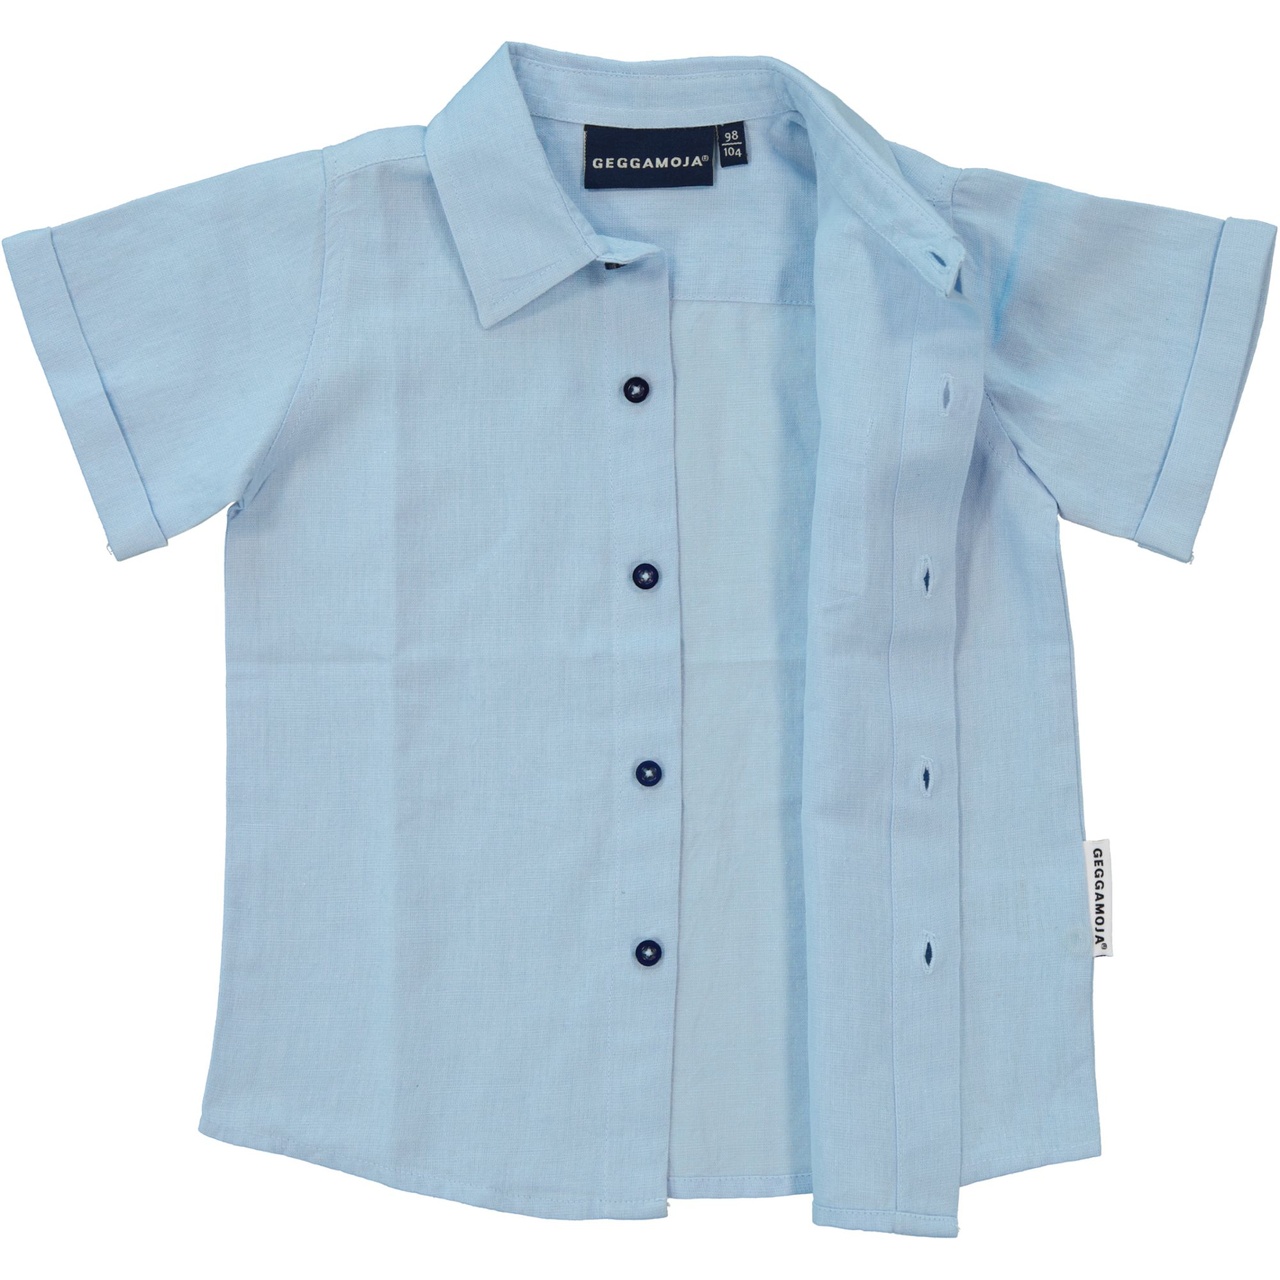 Linnen Shirt S.S Light blue 122/128